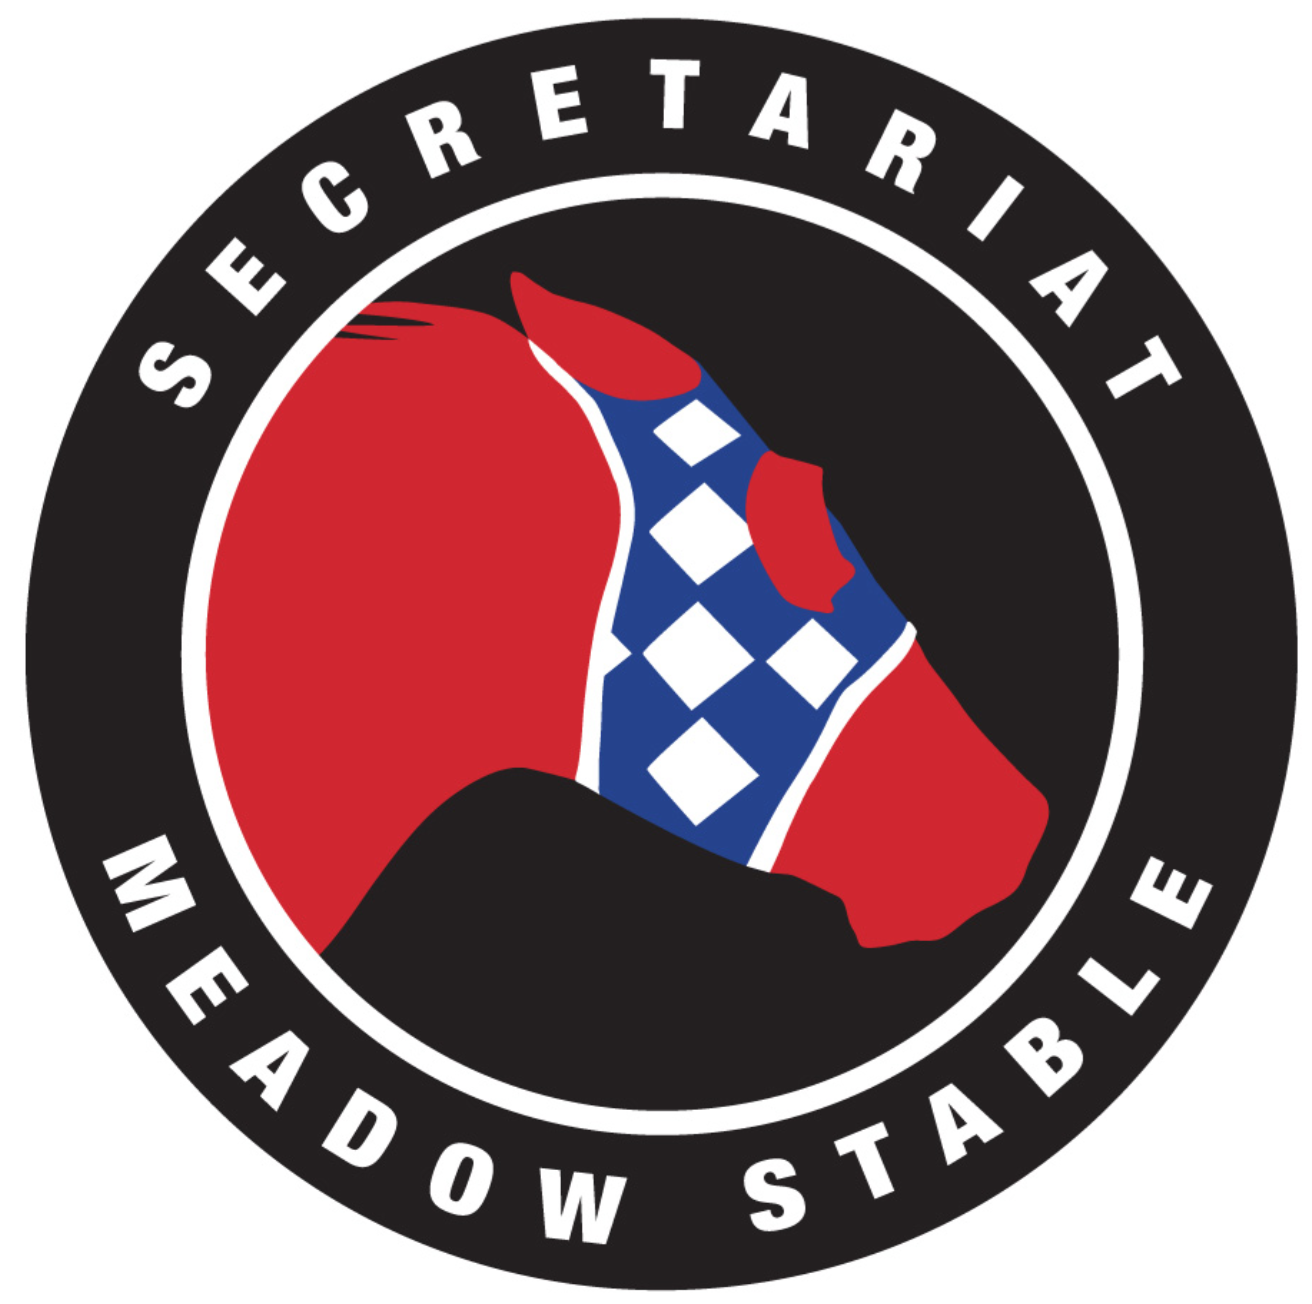 Secretariat Meadow Stables